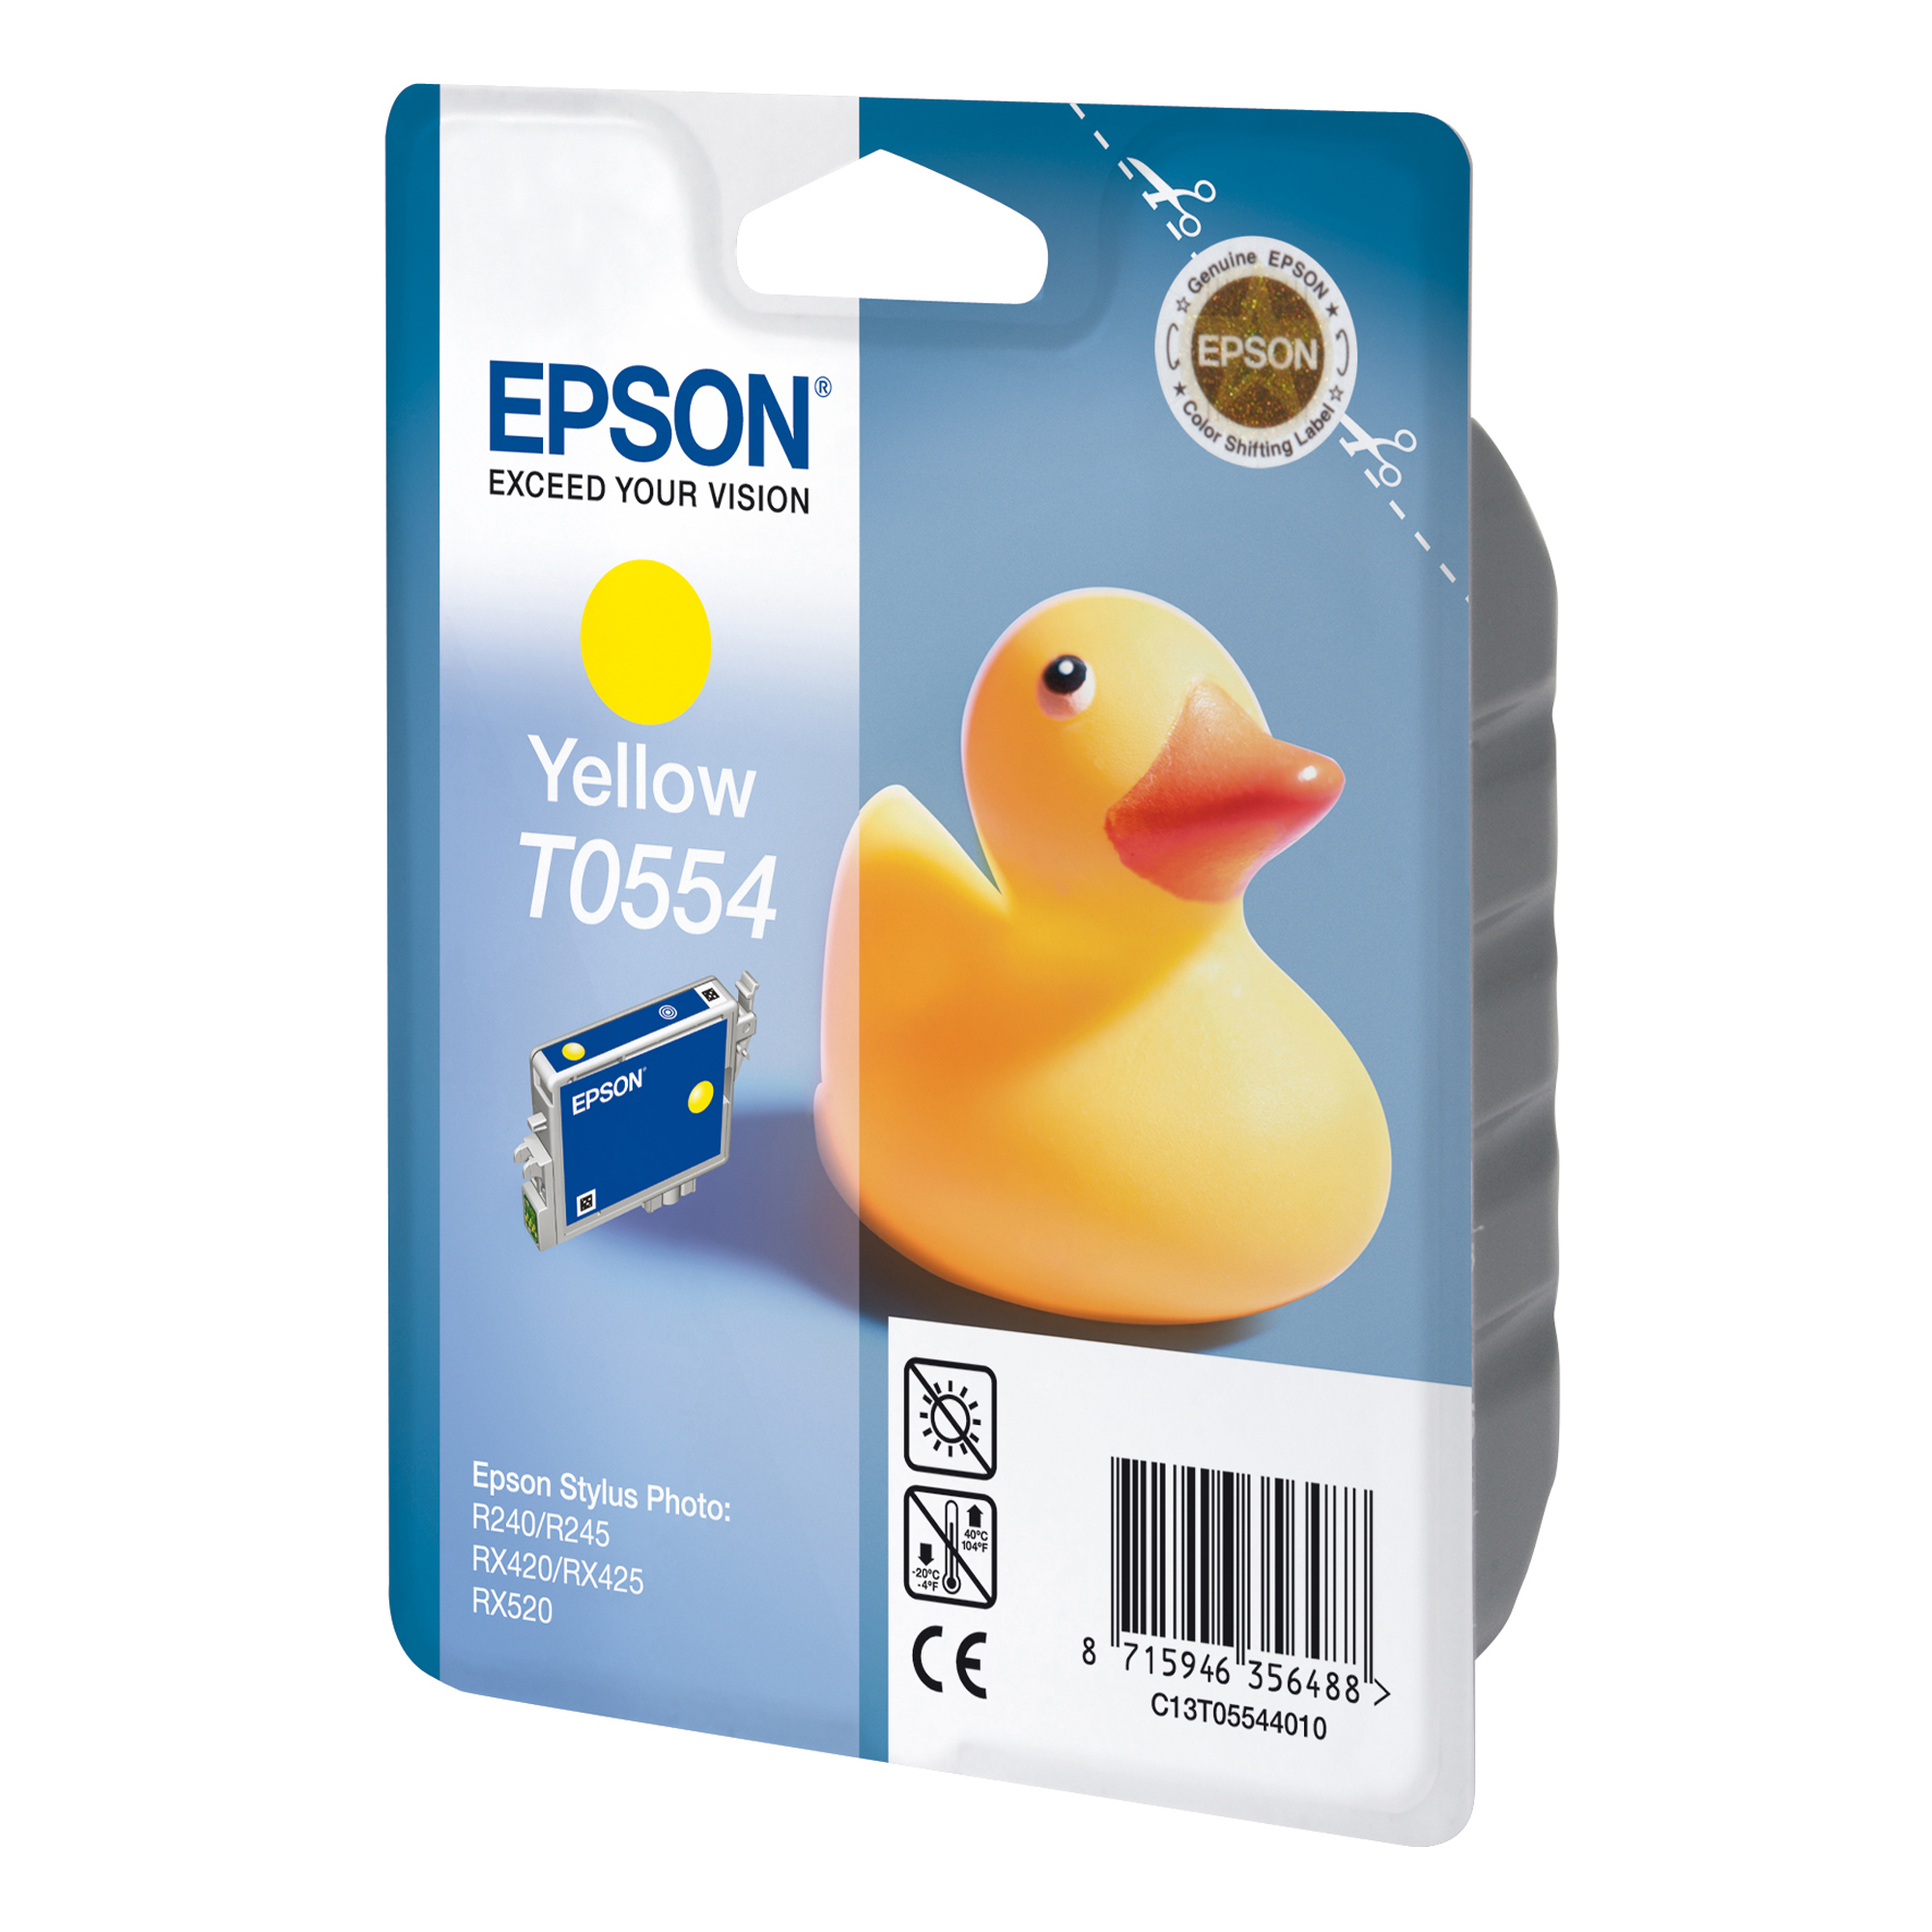 Epson - Cartuccia ink - Giallo - T0554 - C13T05544010 - 8ml